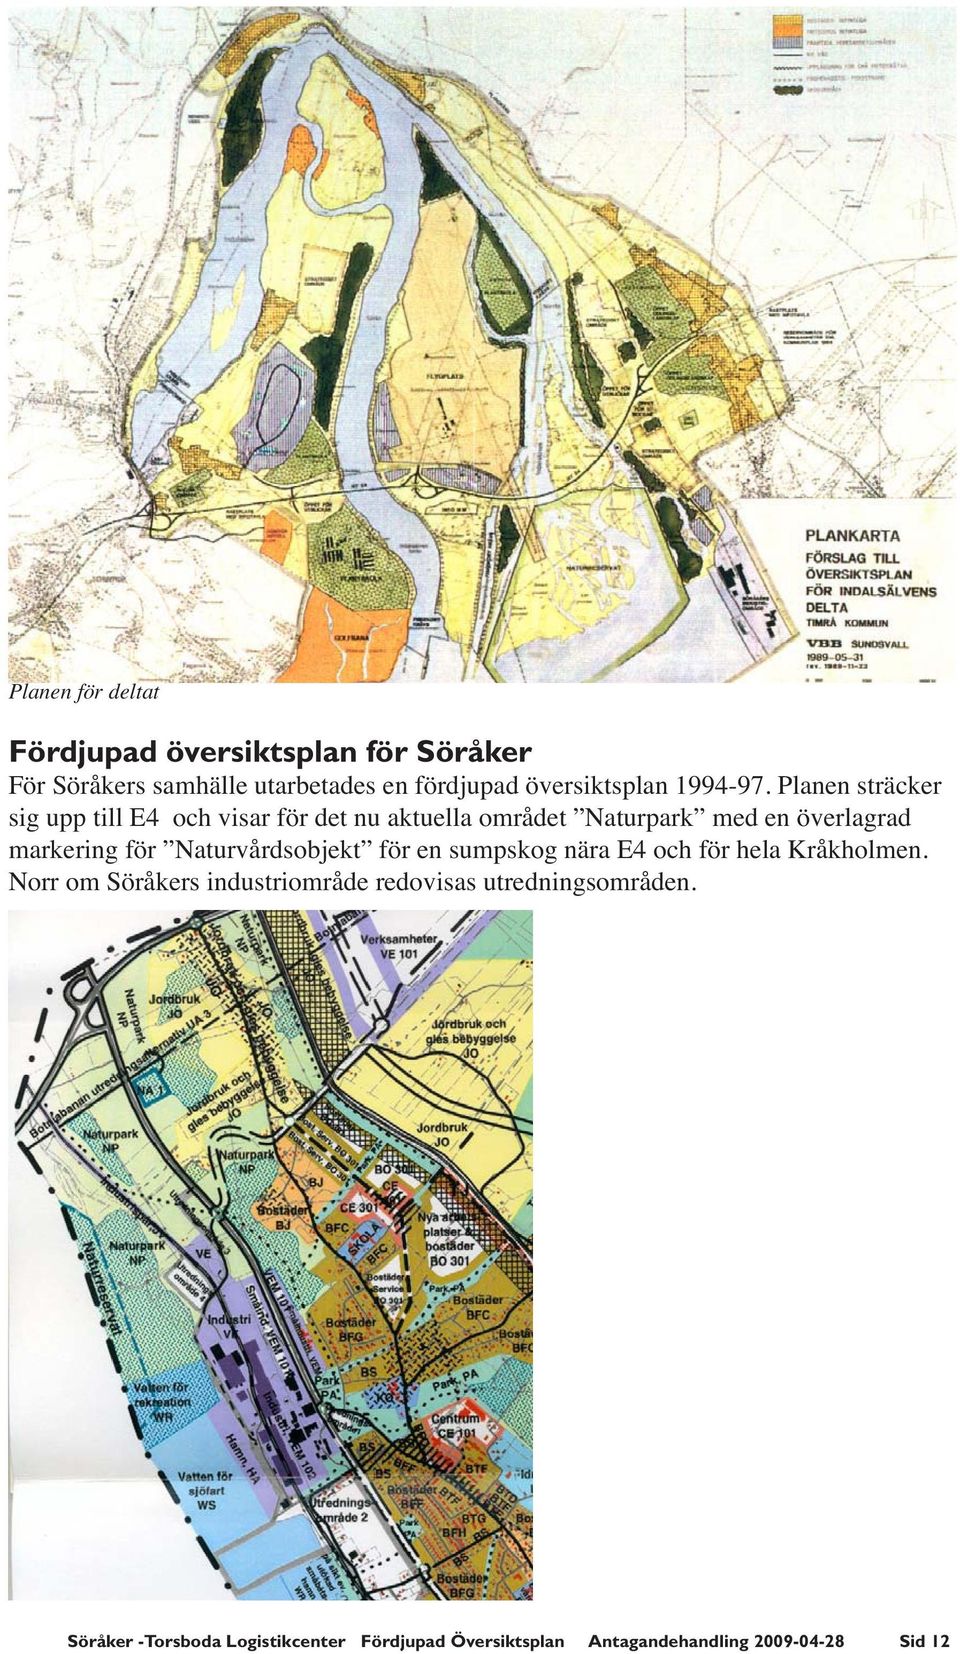 Planen sträcker sig upp till E4 och visar för det nu aktuella området Naturpark med en överlagrad markering för